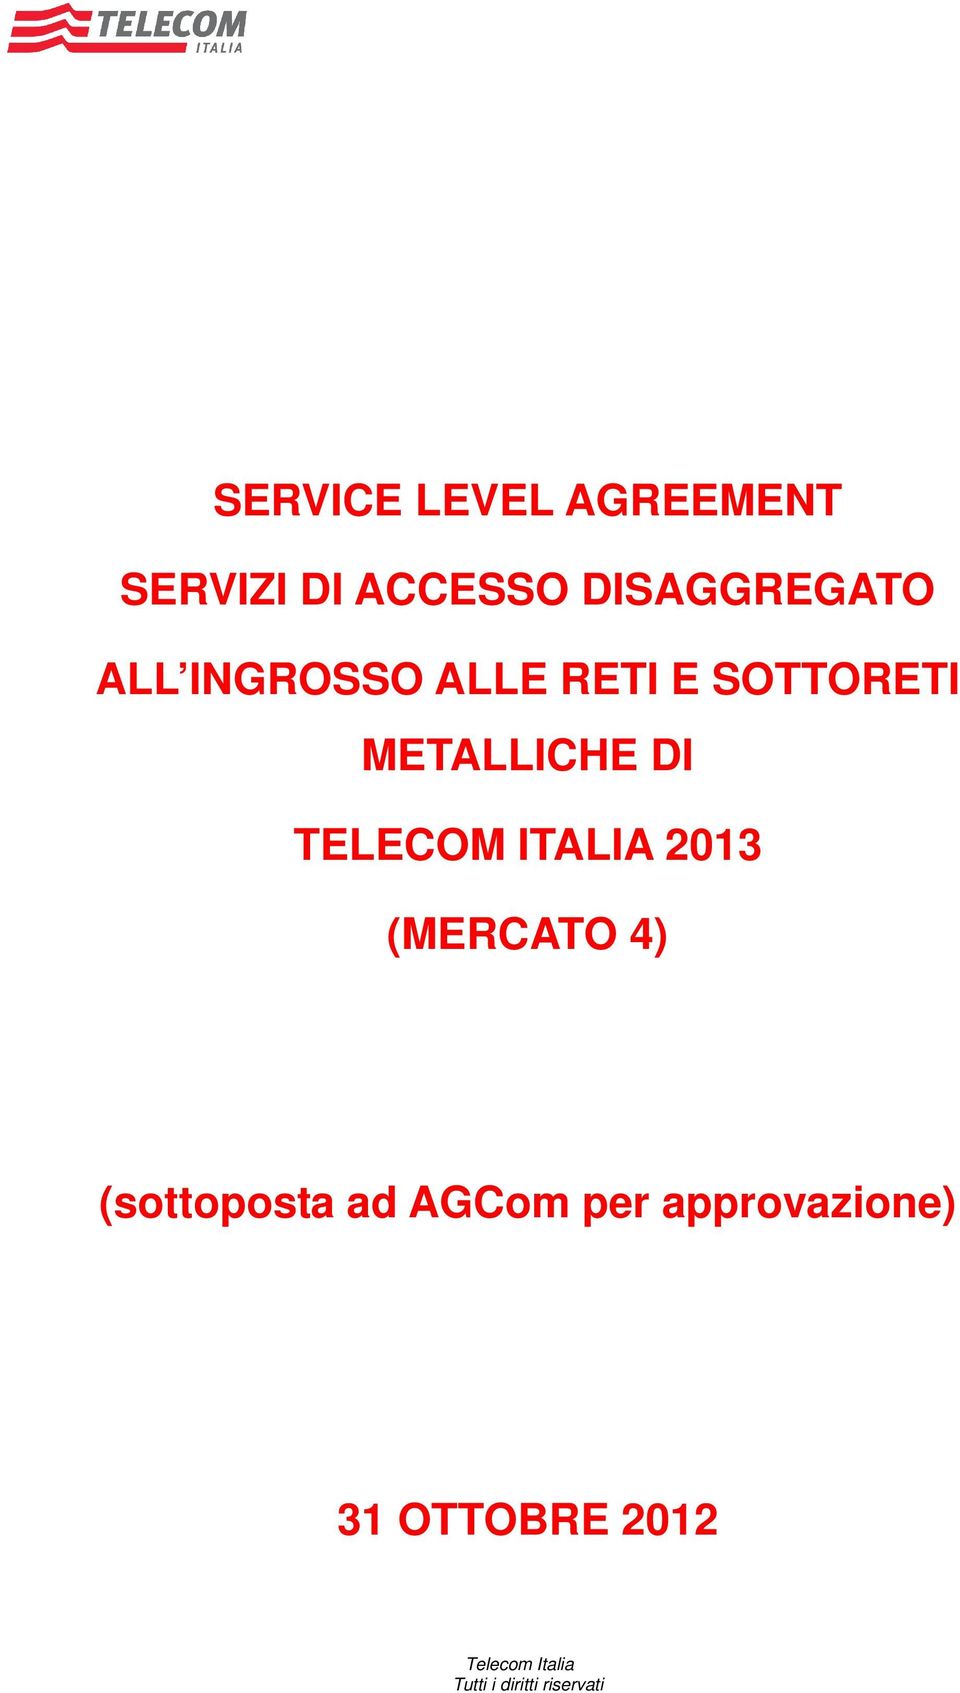 METALLICHE DI TELECOM ITALIA 2013 (MERCATO 4)